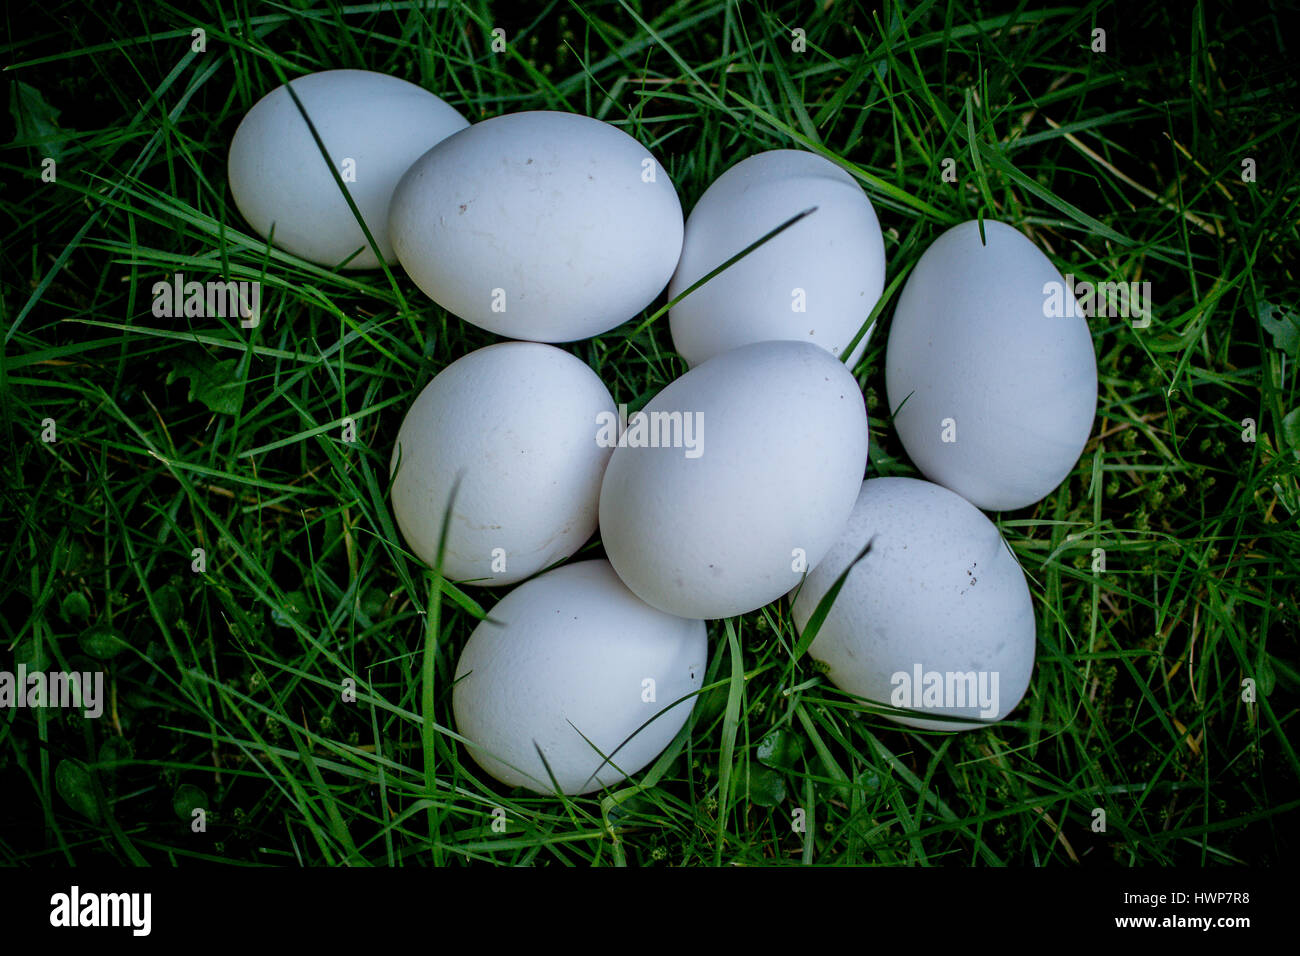 Eight Fresh White Eggs on Lawn taken on warm sring day Stock Photo